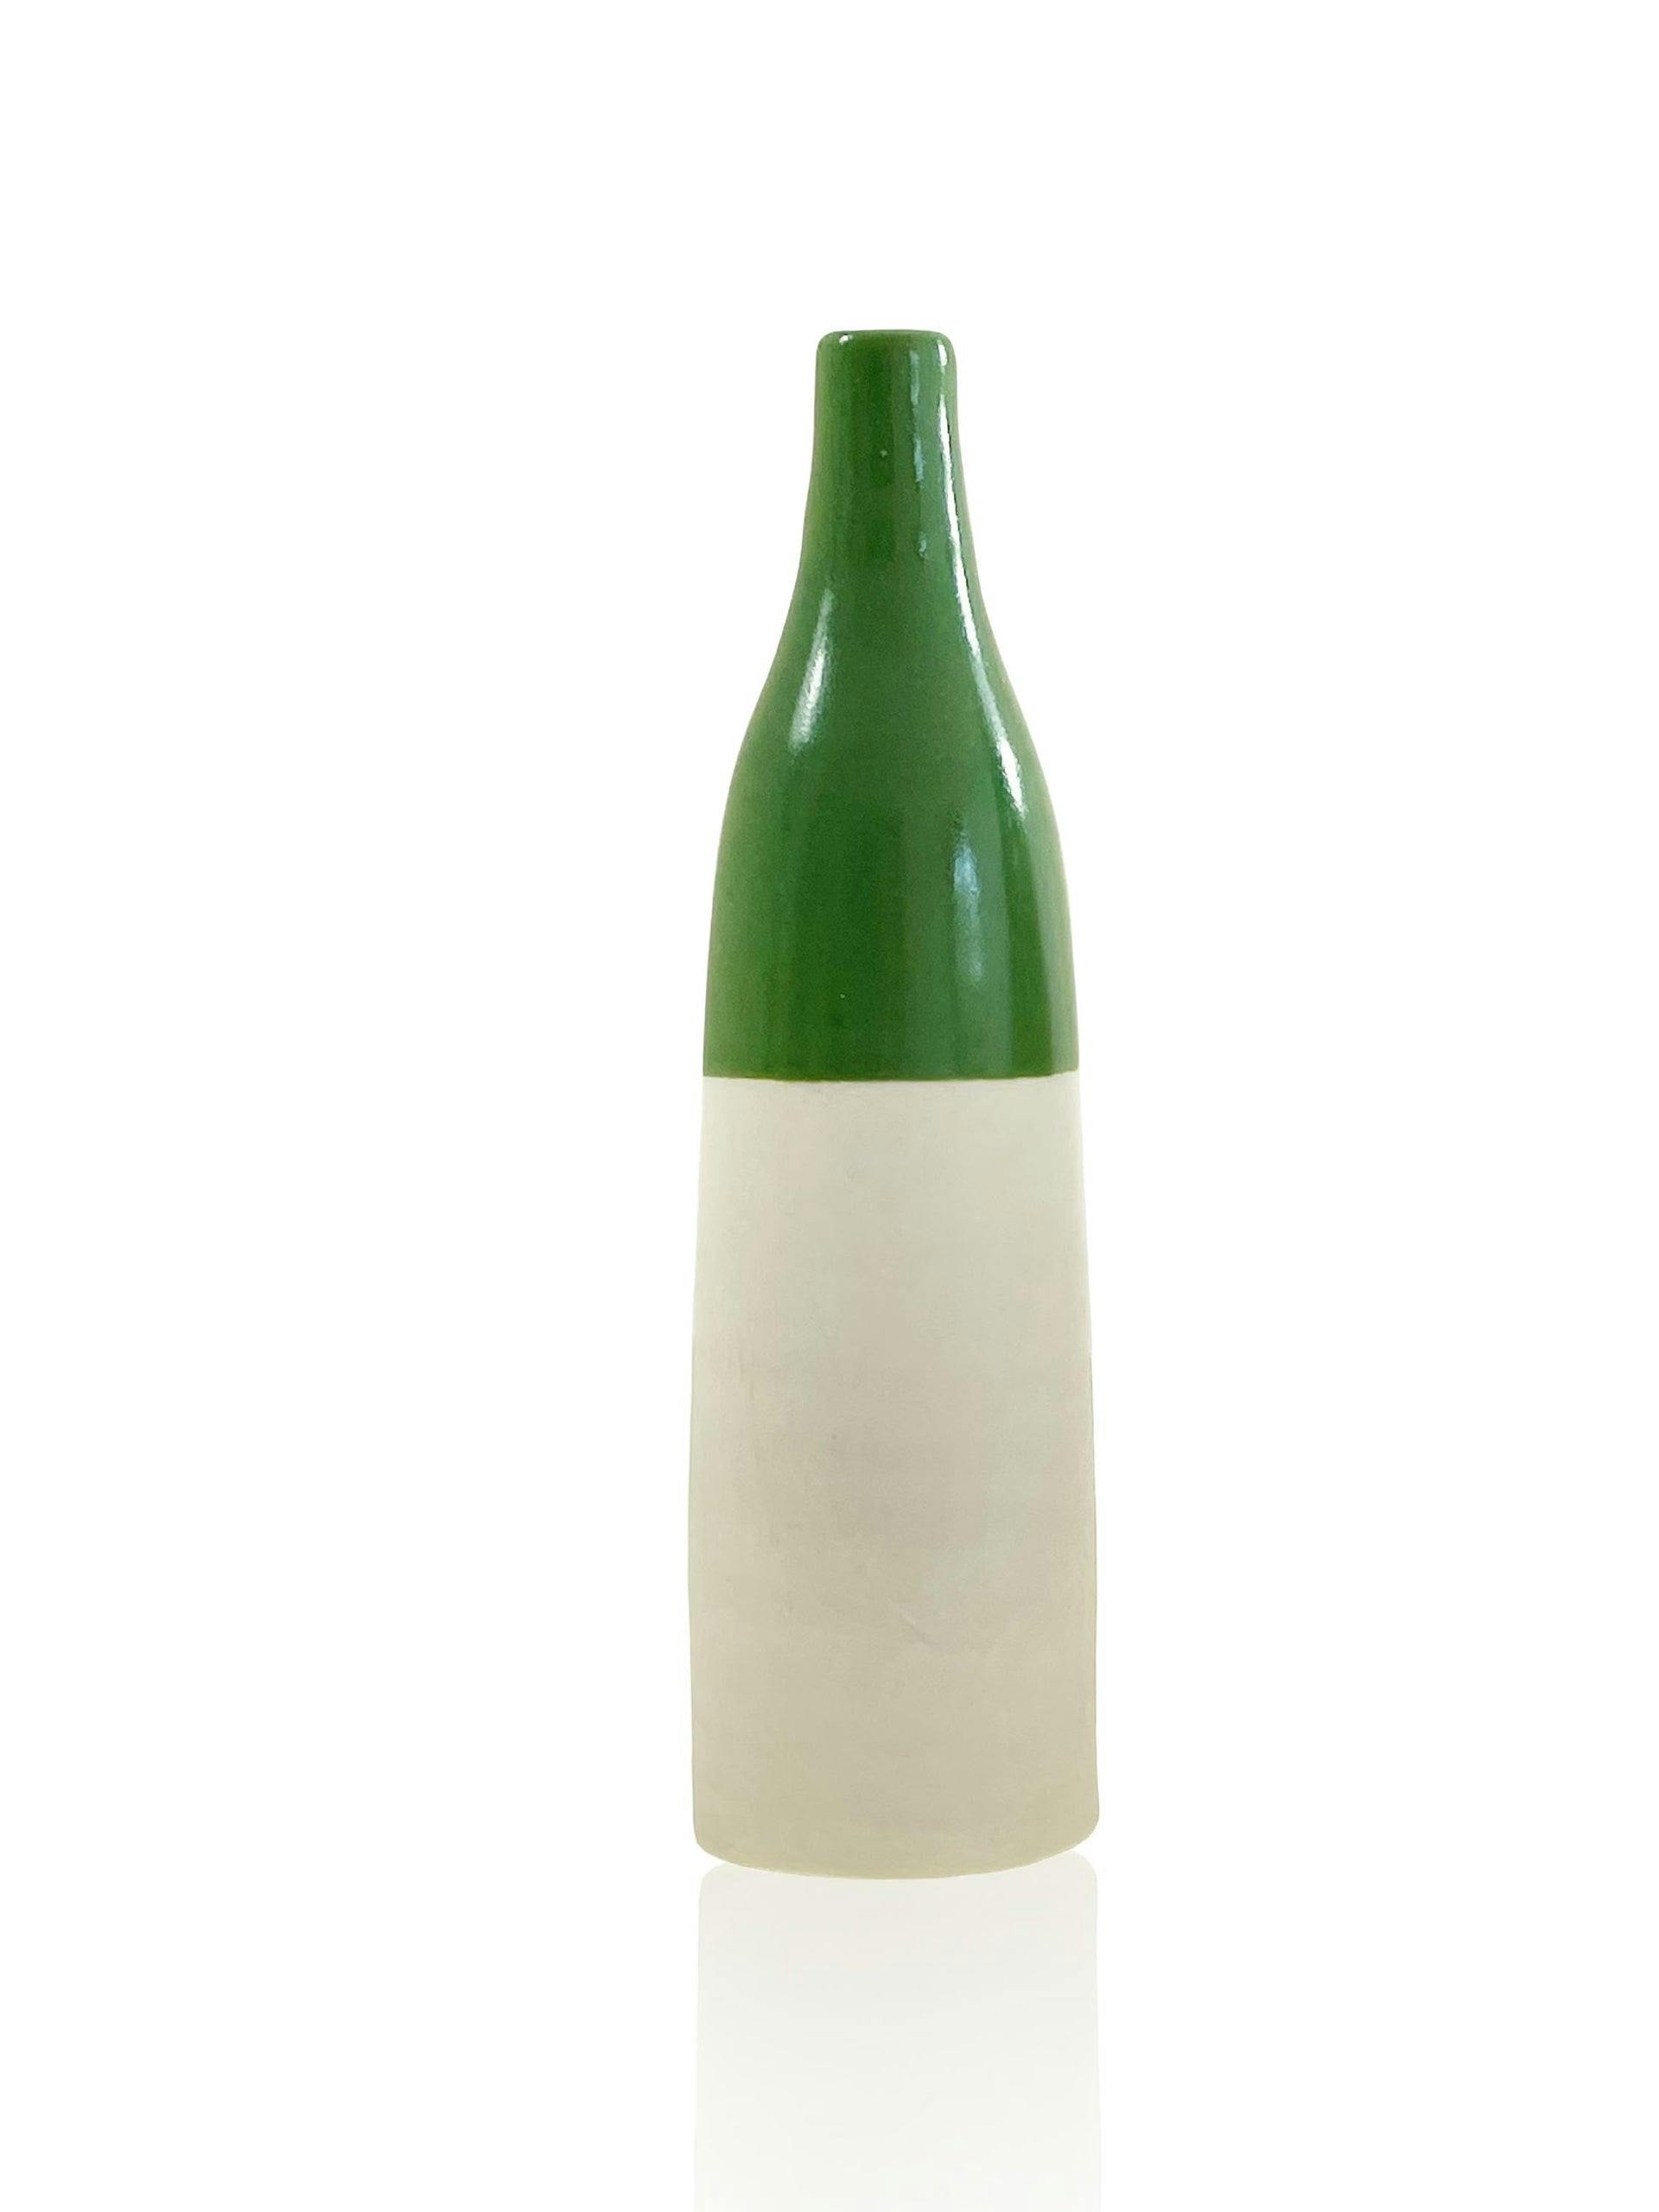 Spring Green - Ceramic Bottle Bud Vase